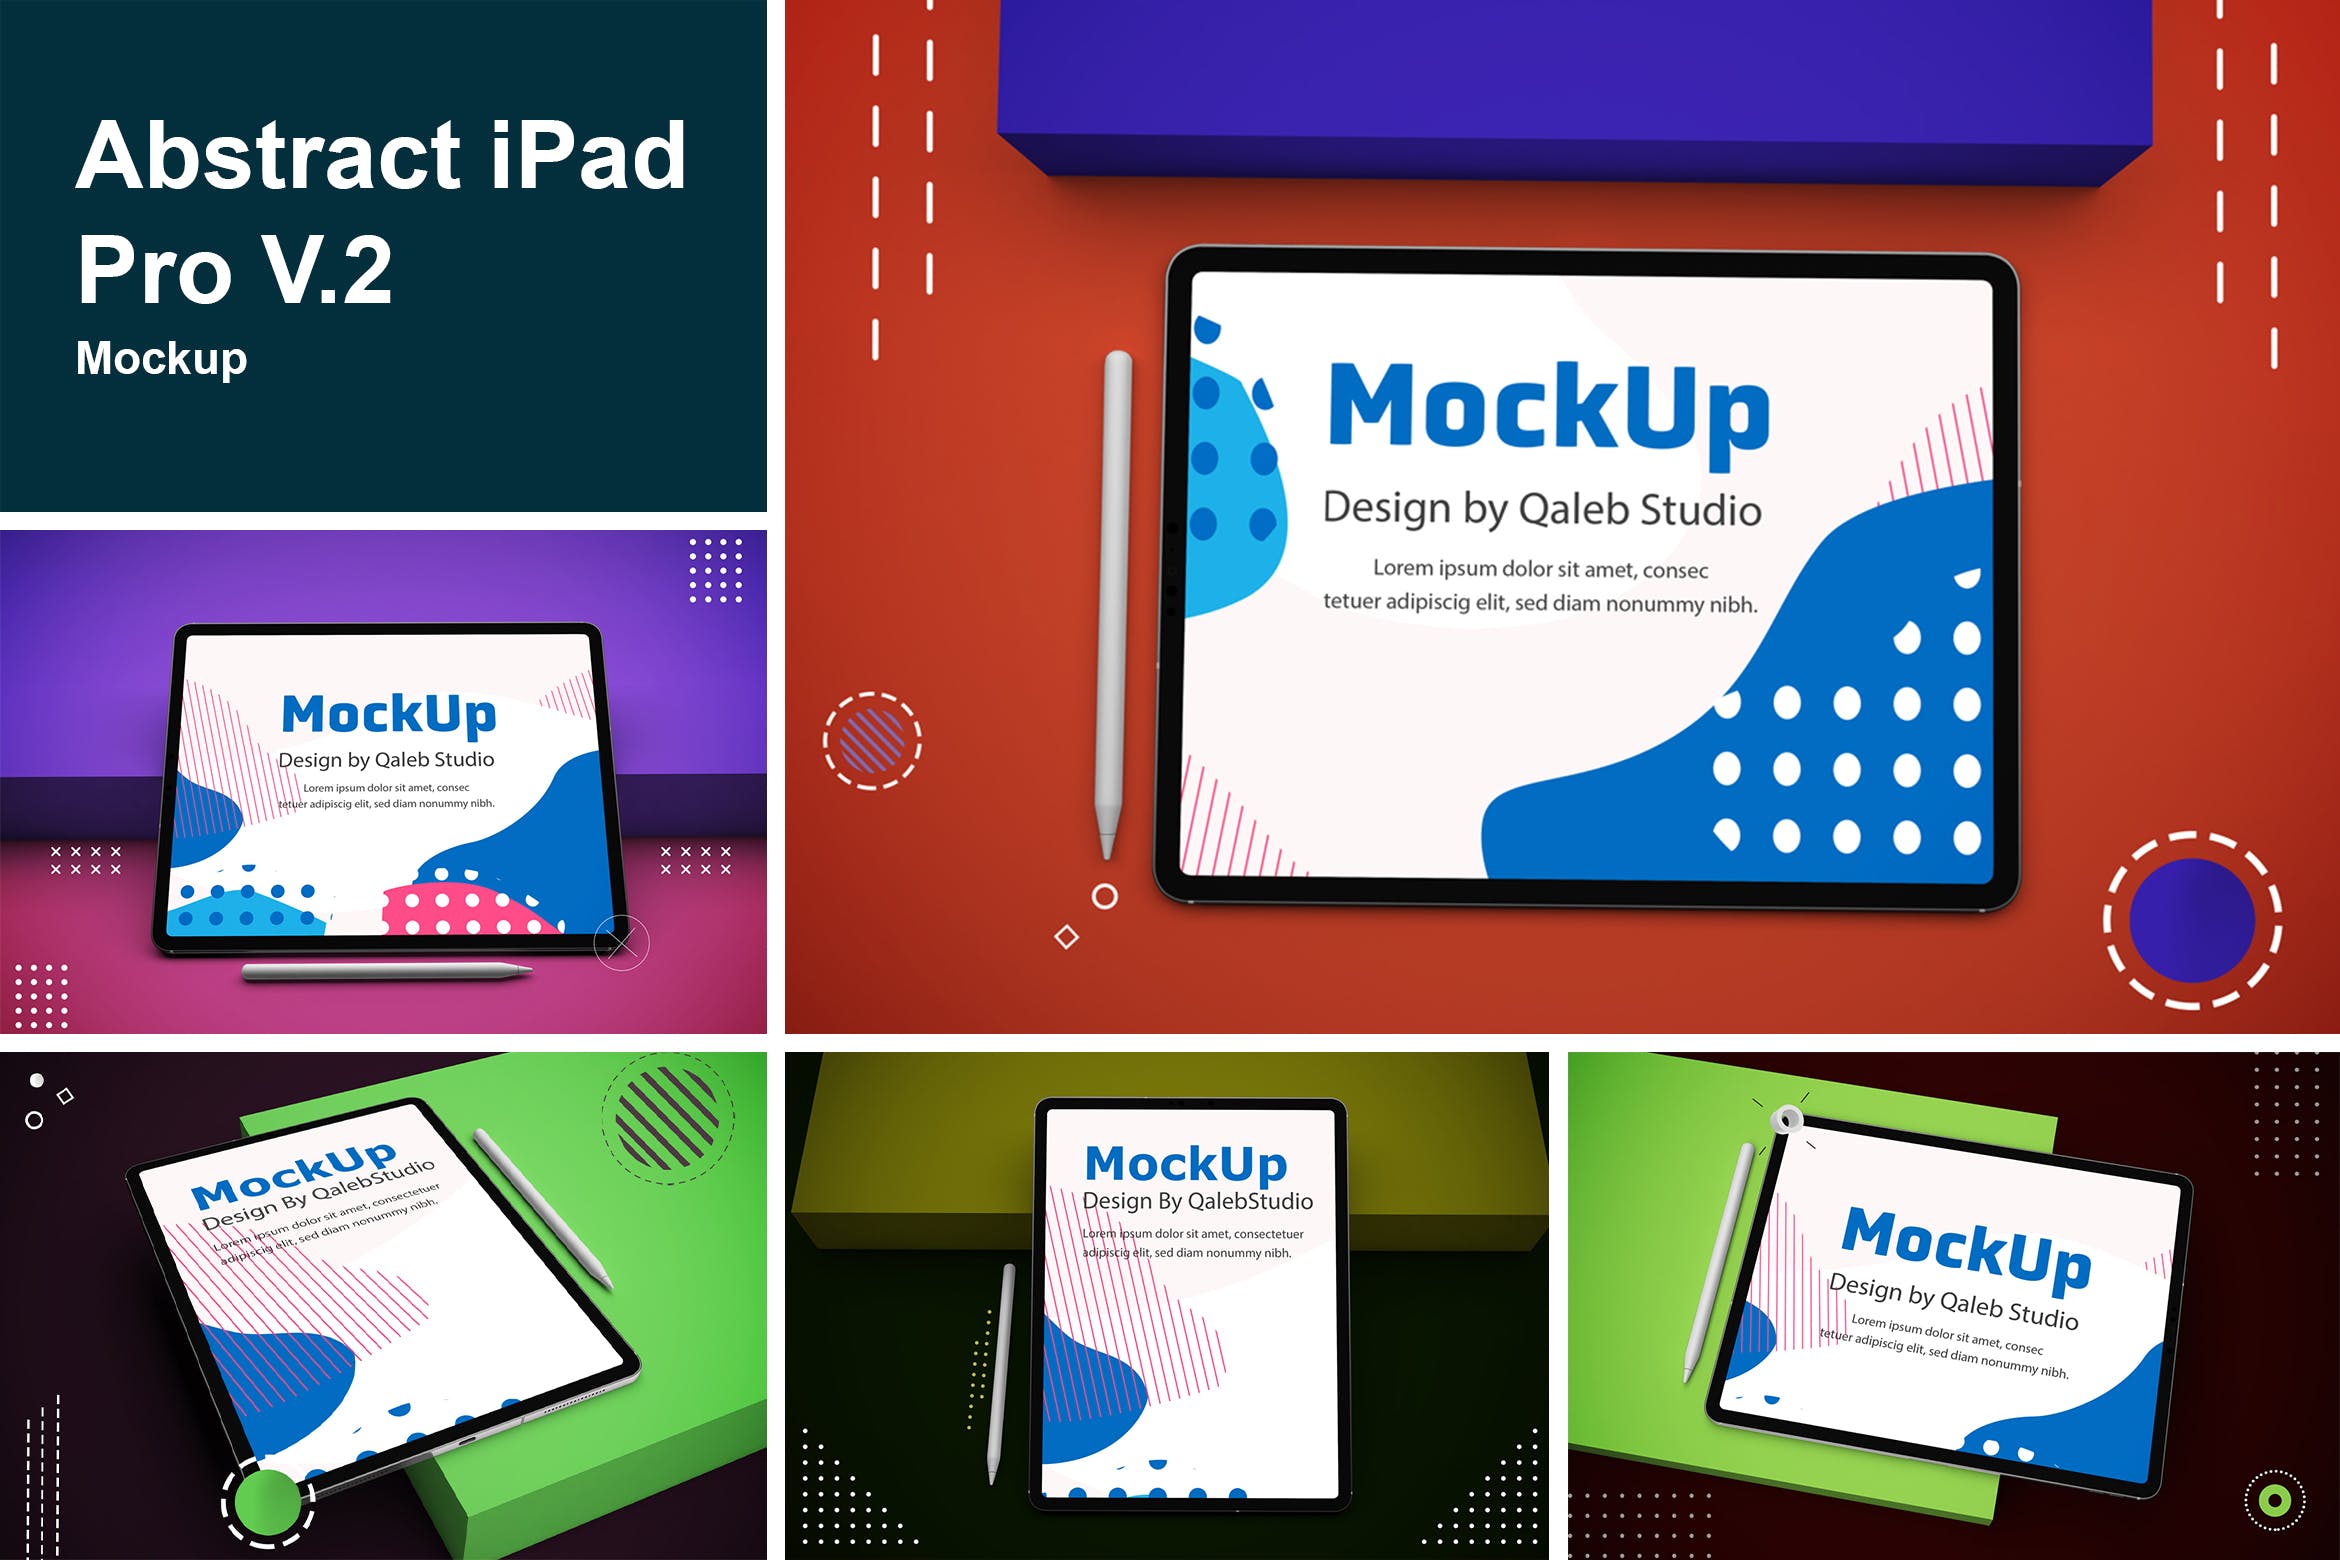 抽象设计风格iPad Pro平板电脑屏幕效果图第一素材精选样机v2 Abstract iPad Pro V.2 Mockup插图